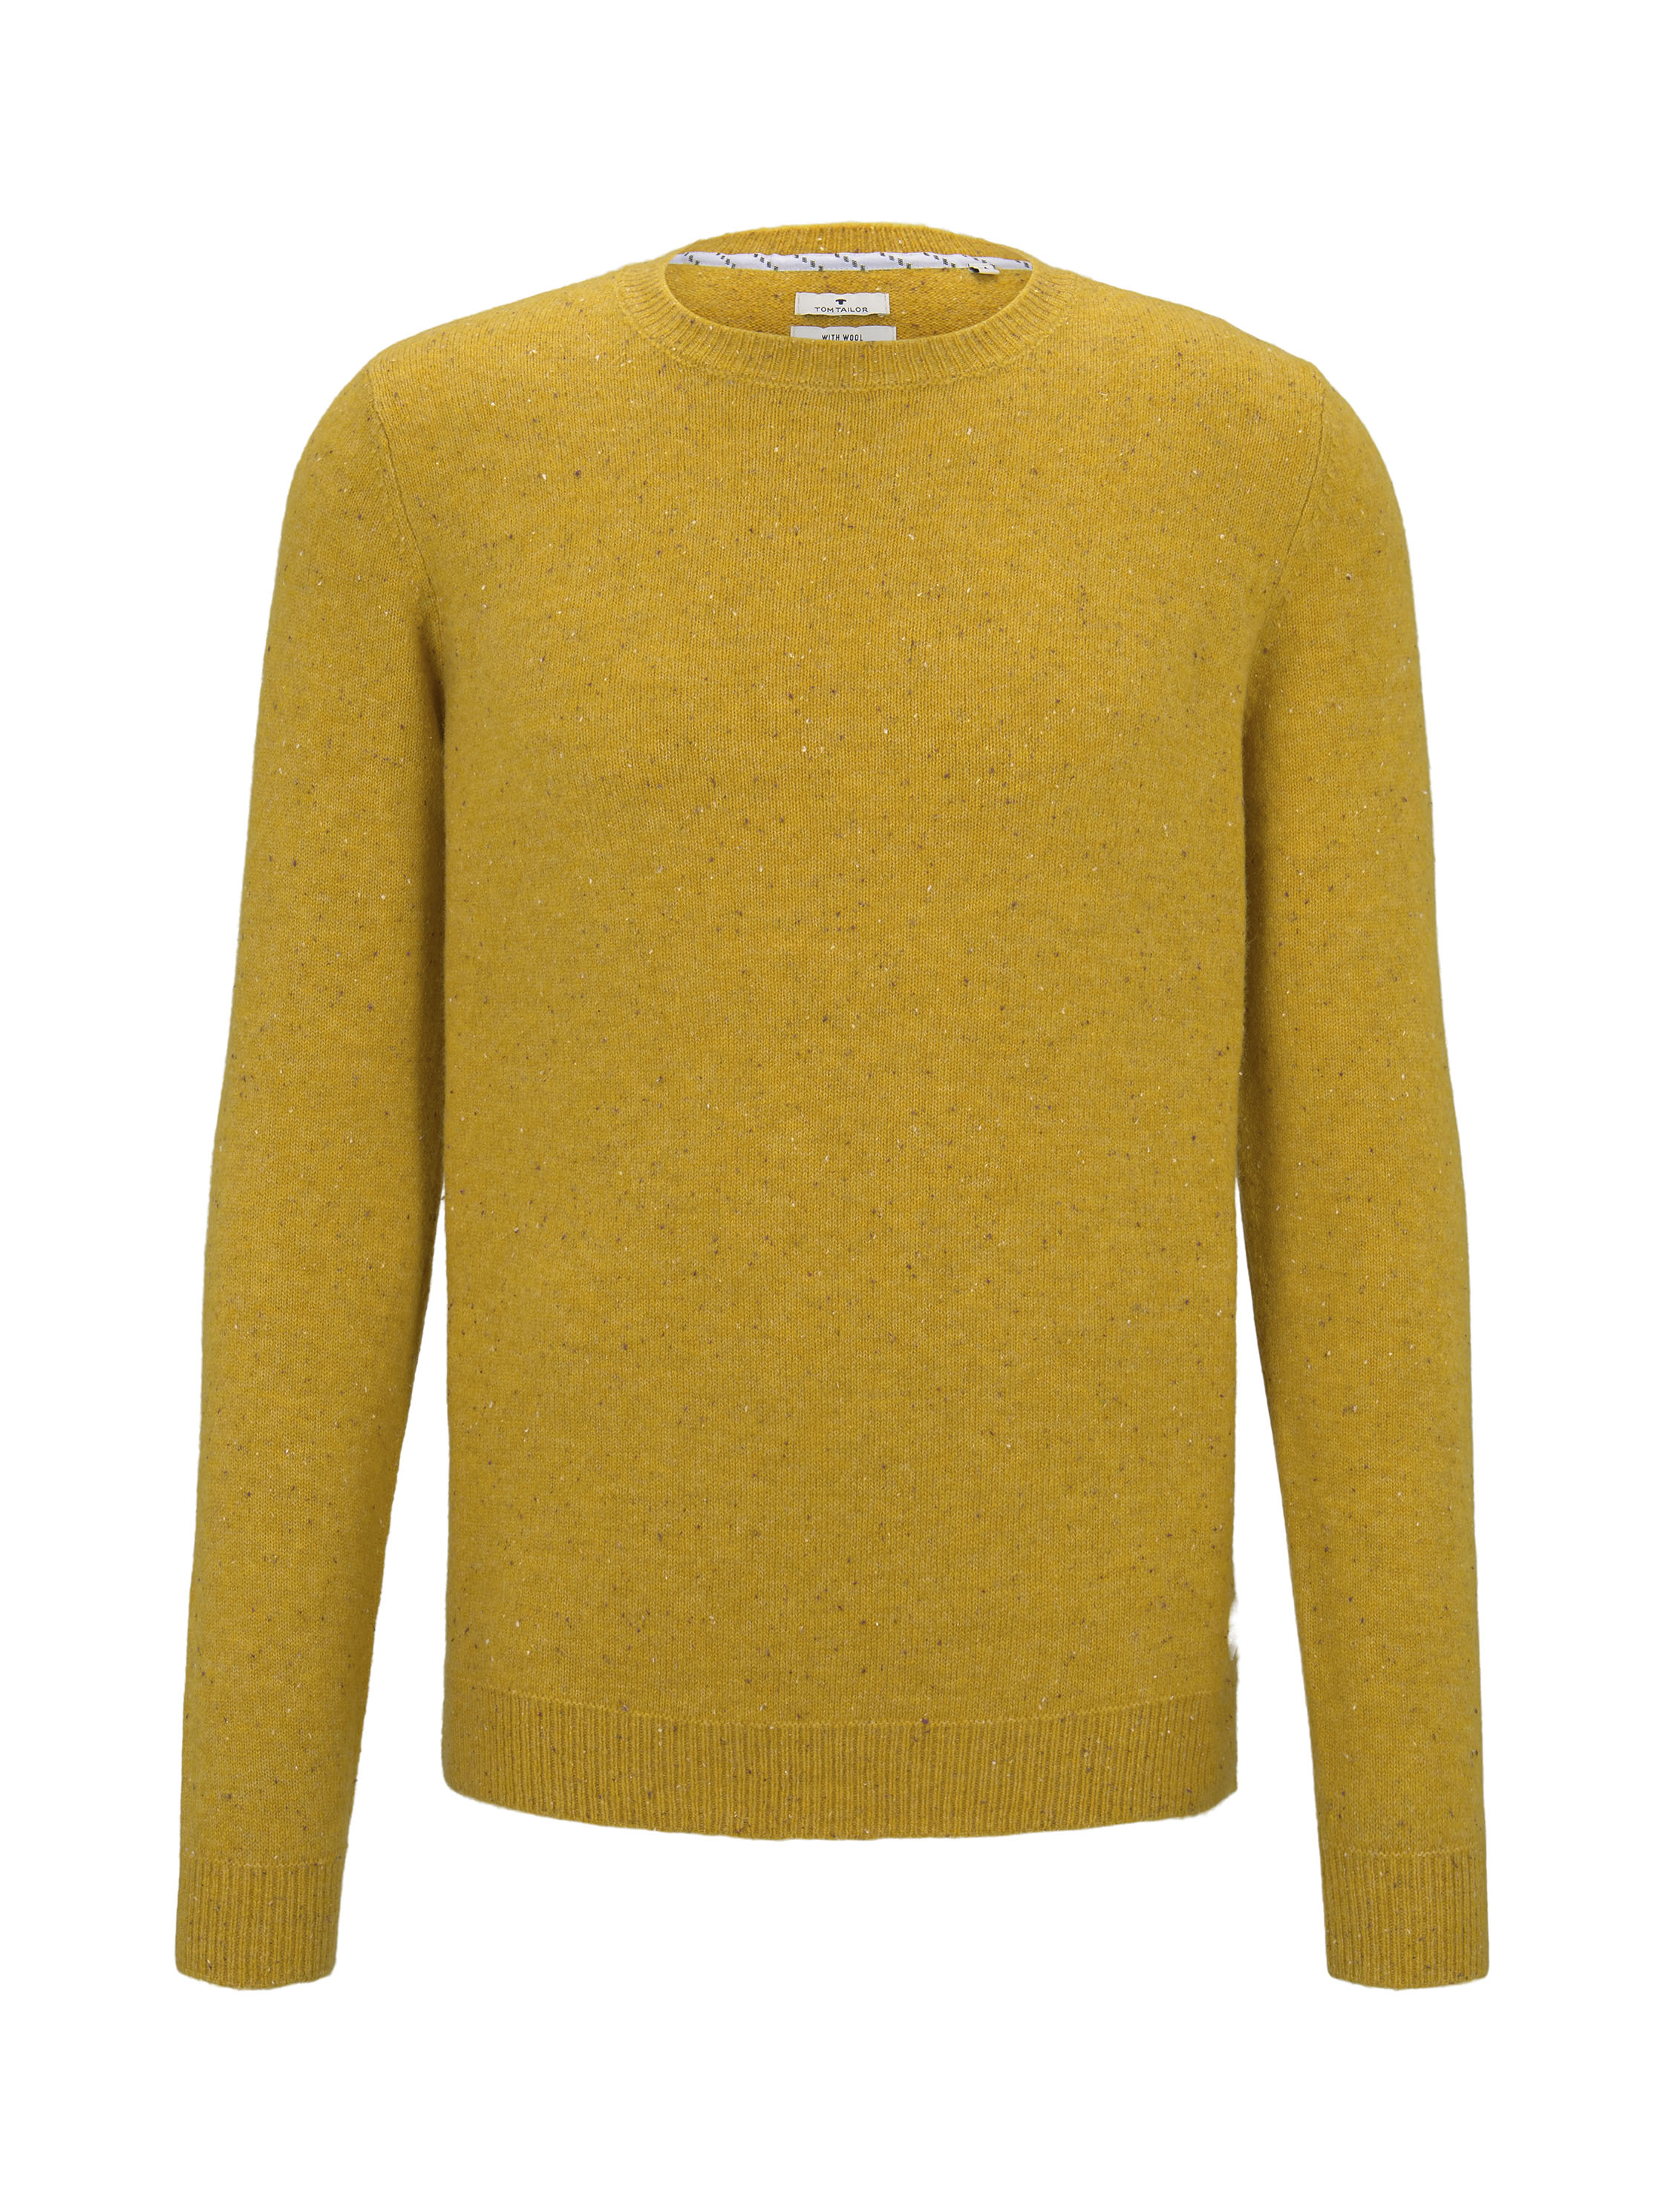 cosy nep sweater, yellow nep yarn               Yello